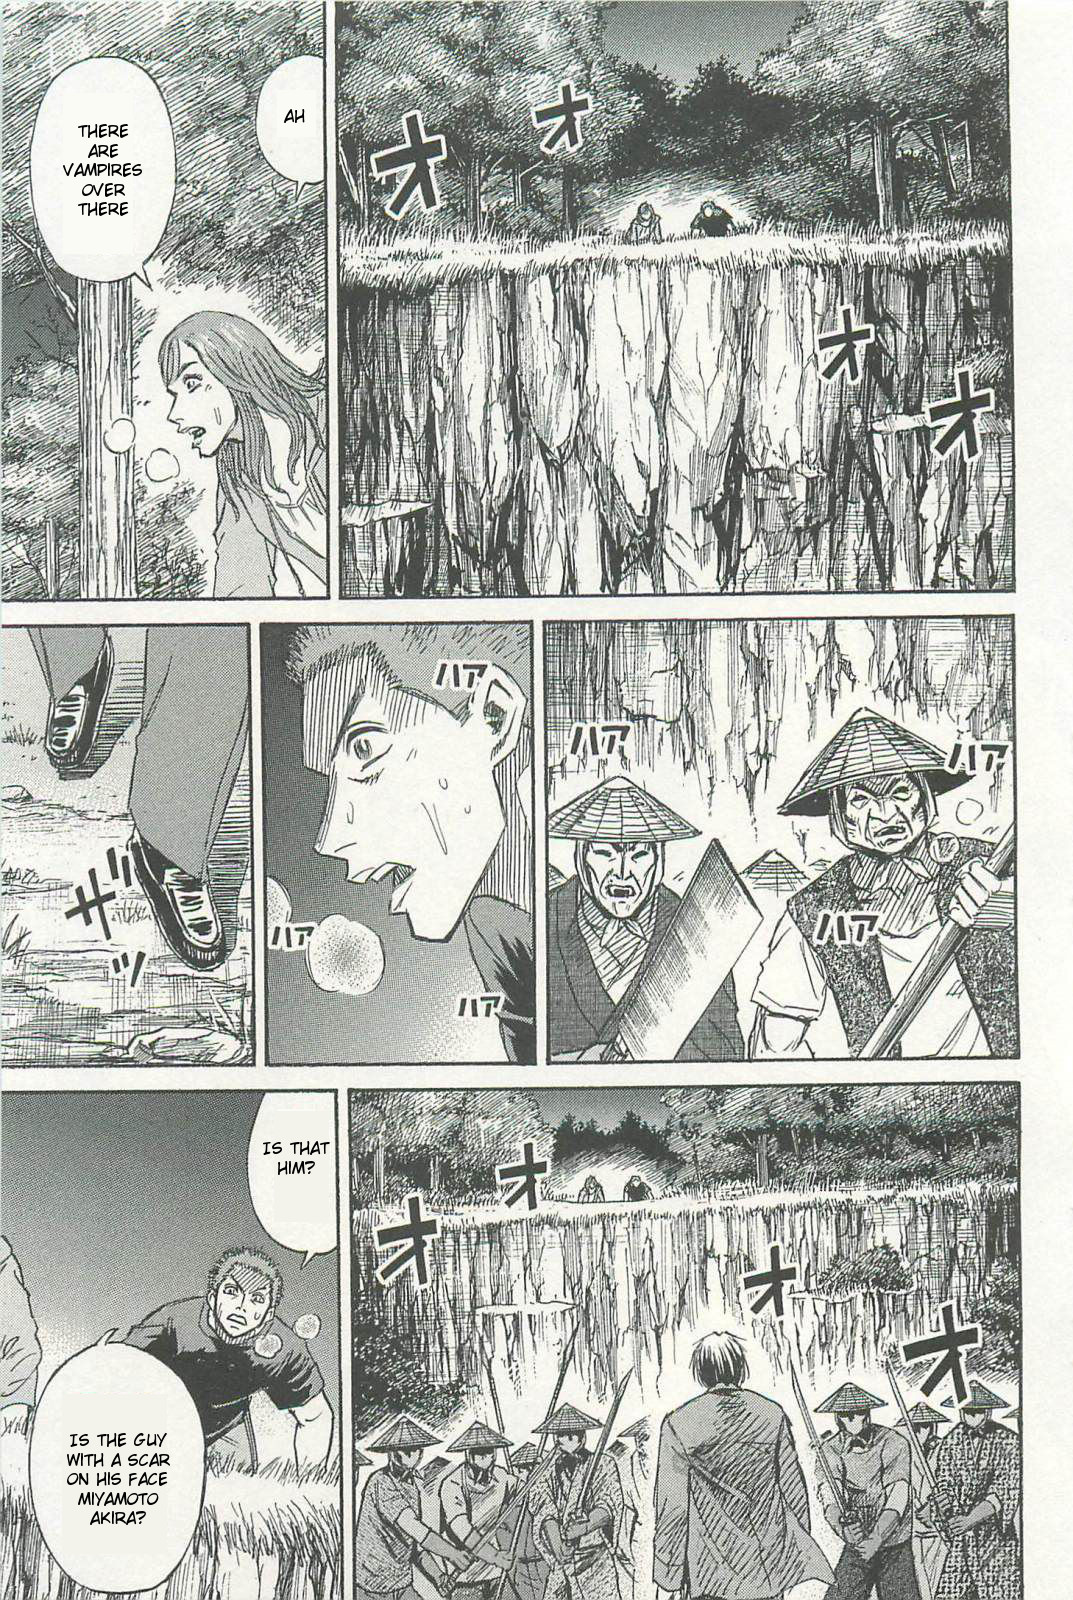 Higanjima Saigo no 47 Hiai Vol. 1 Ch. 2 Kazumi